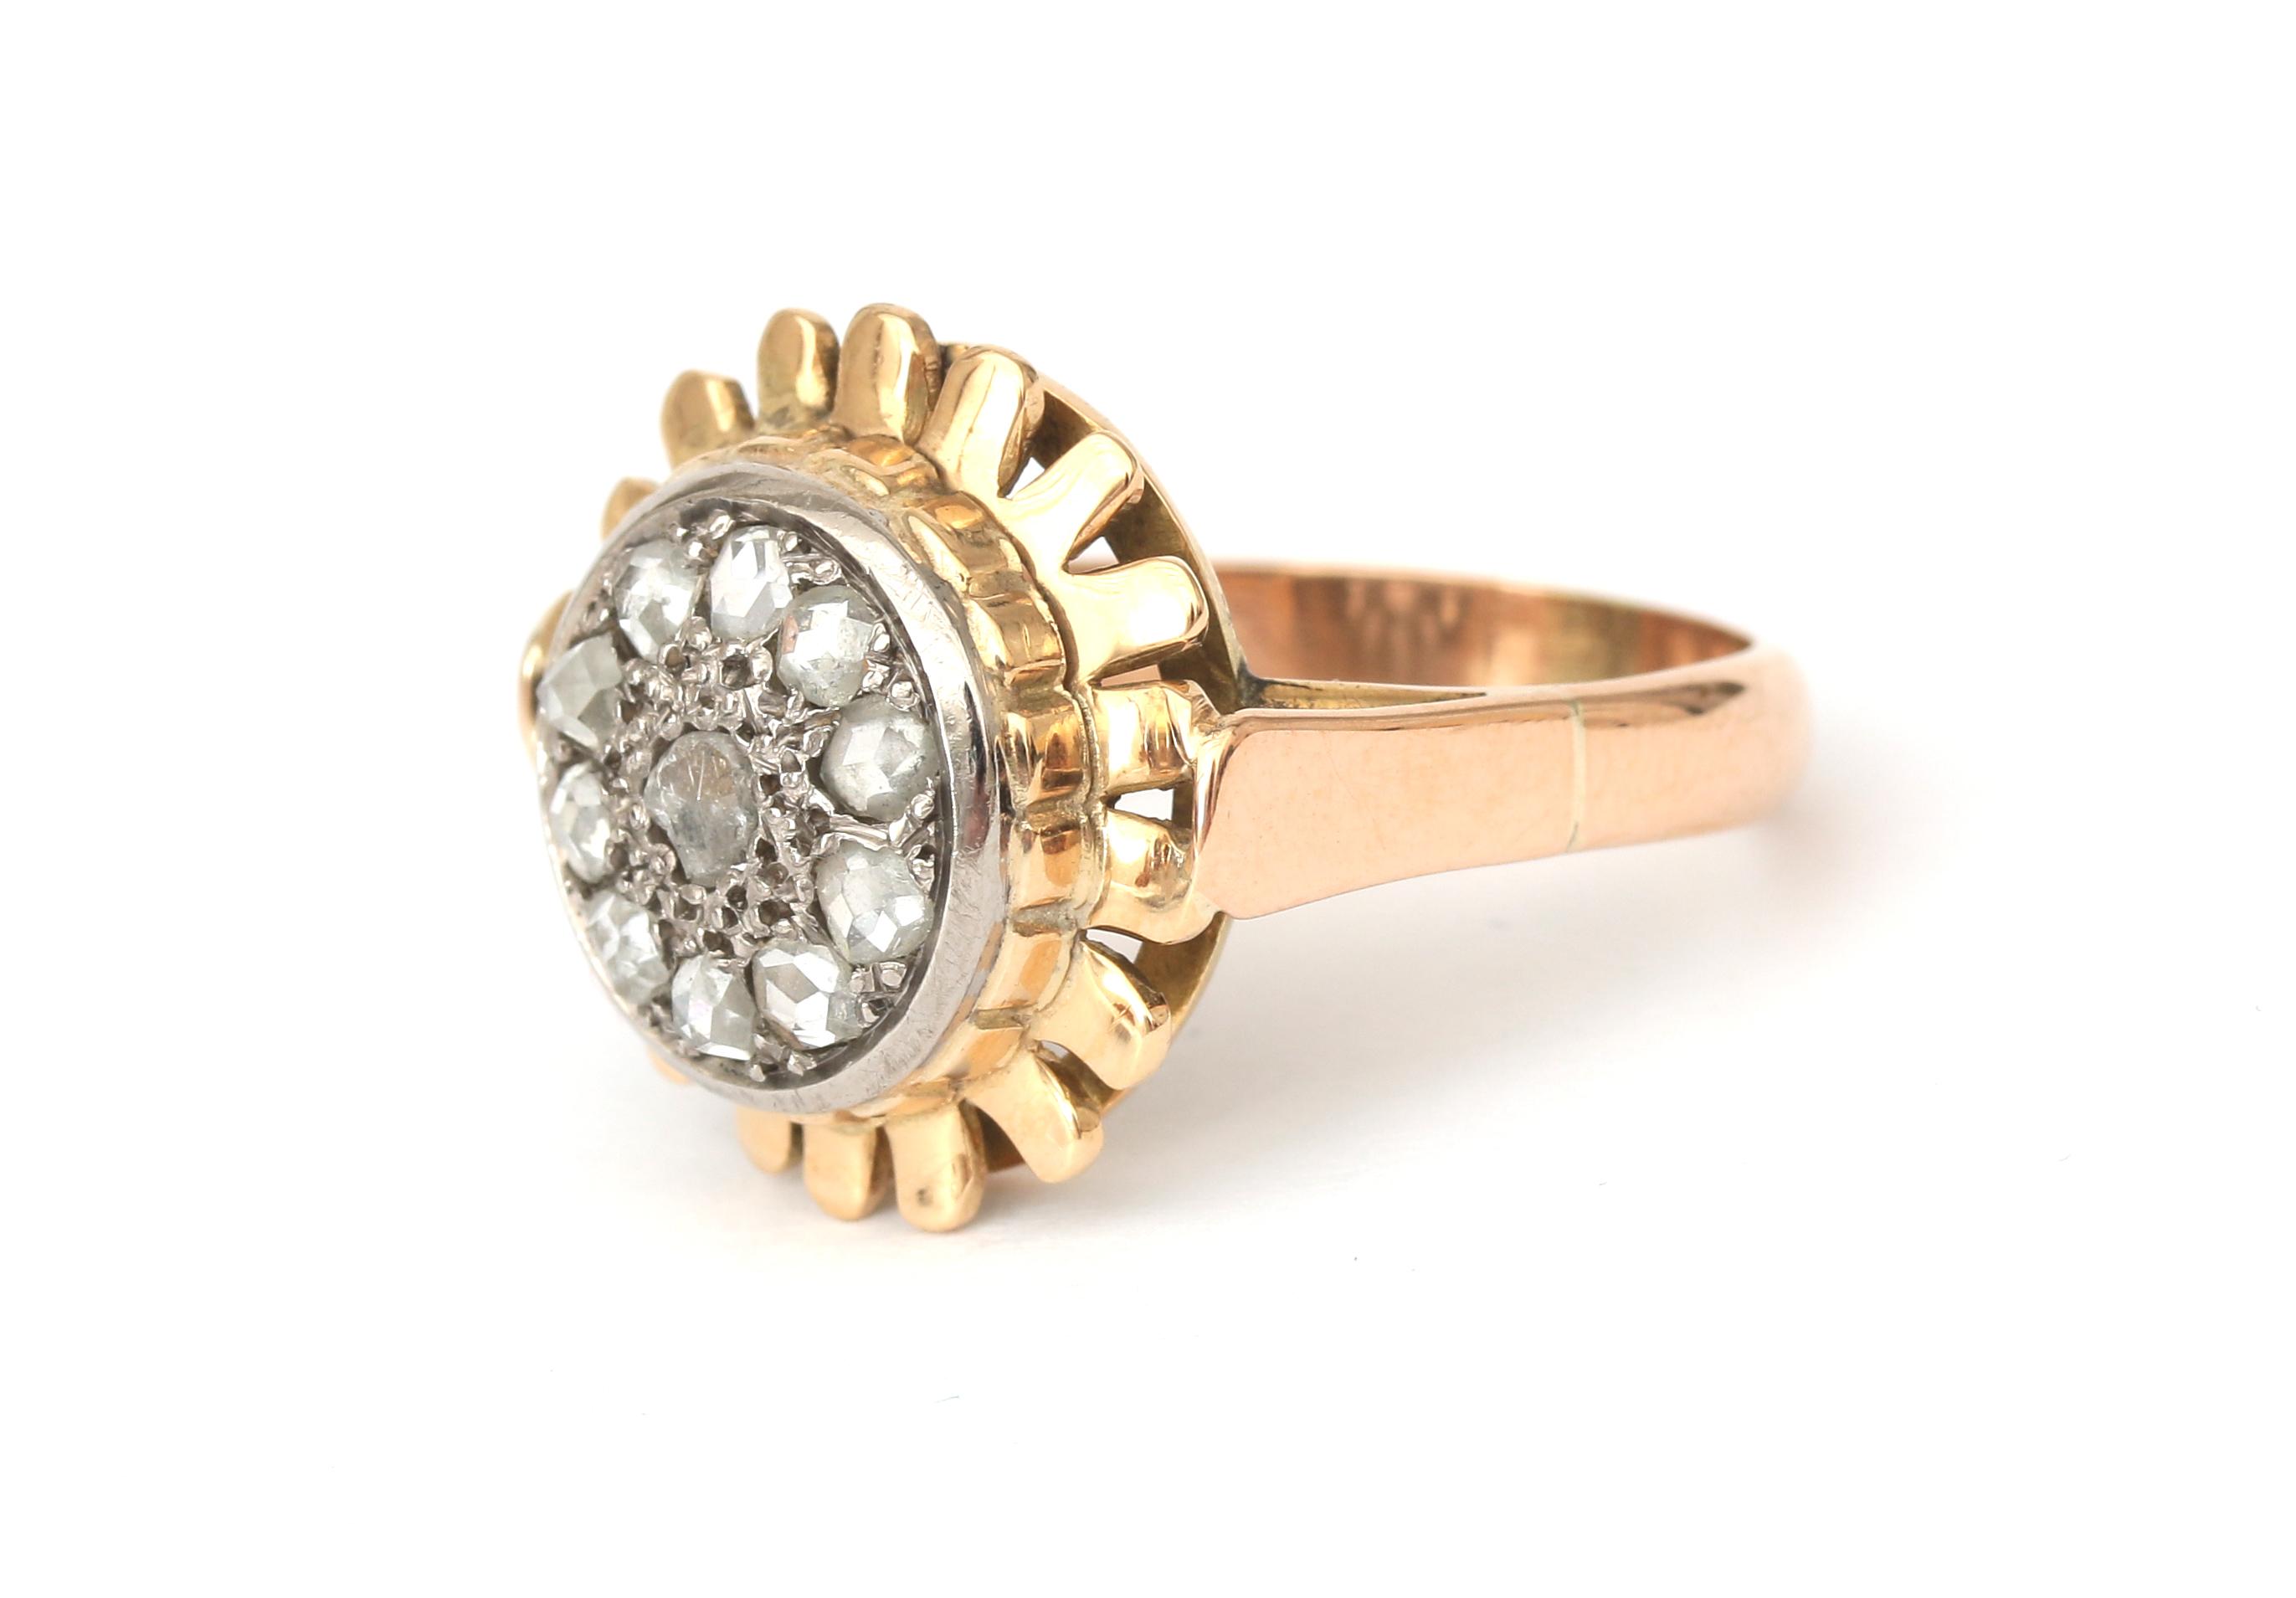 An 18 karat gold rose cut diamond cluster ring - Image 2 of 4